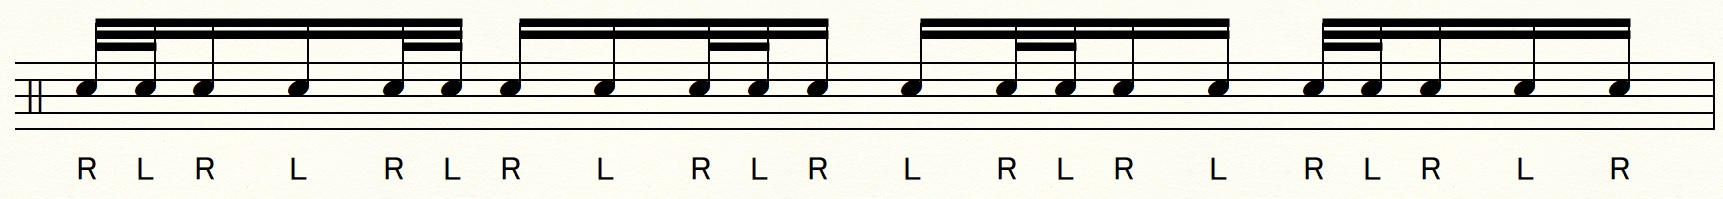 ドラムのバケラッタの譜面例